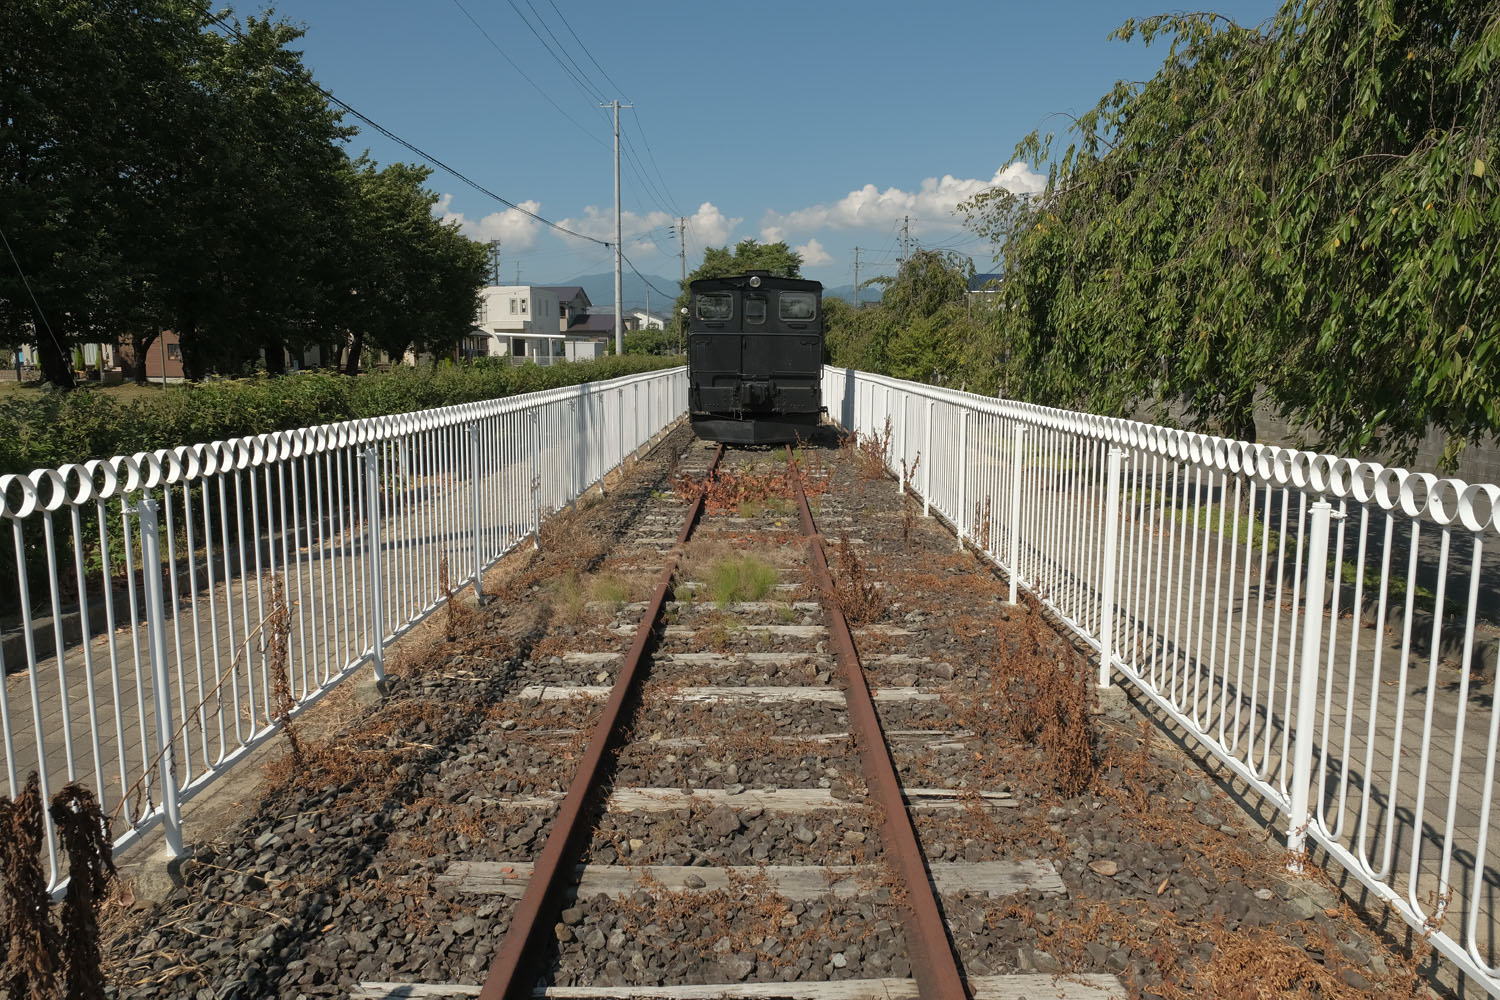 63号機と入換機関車は遊歩道の中心部分にある。喜多方駅からでもそう遠くはないので、比較的訪れやすいだろう。設置されたレールは会津加納駅跡のレールと比べて新しめである